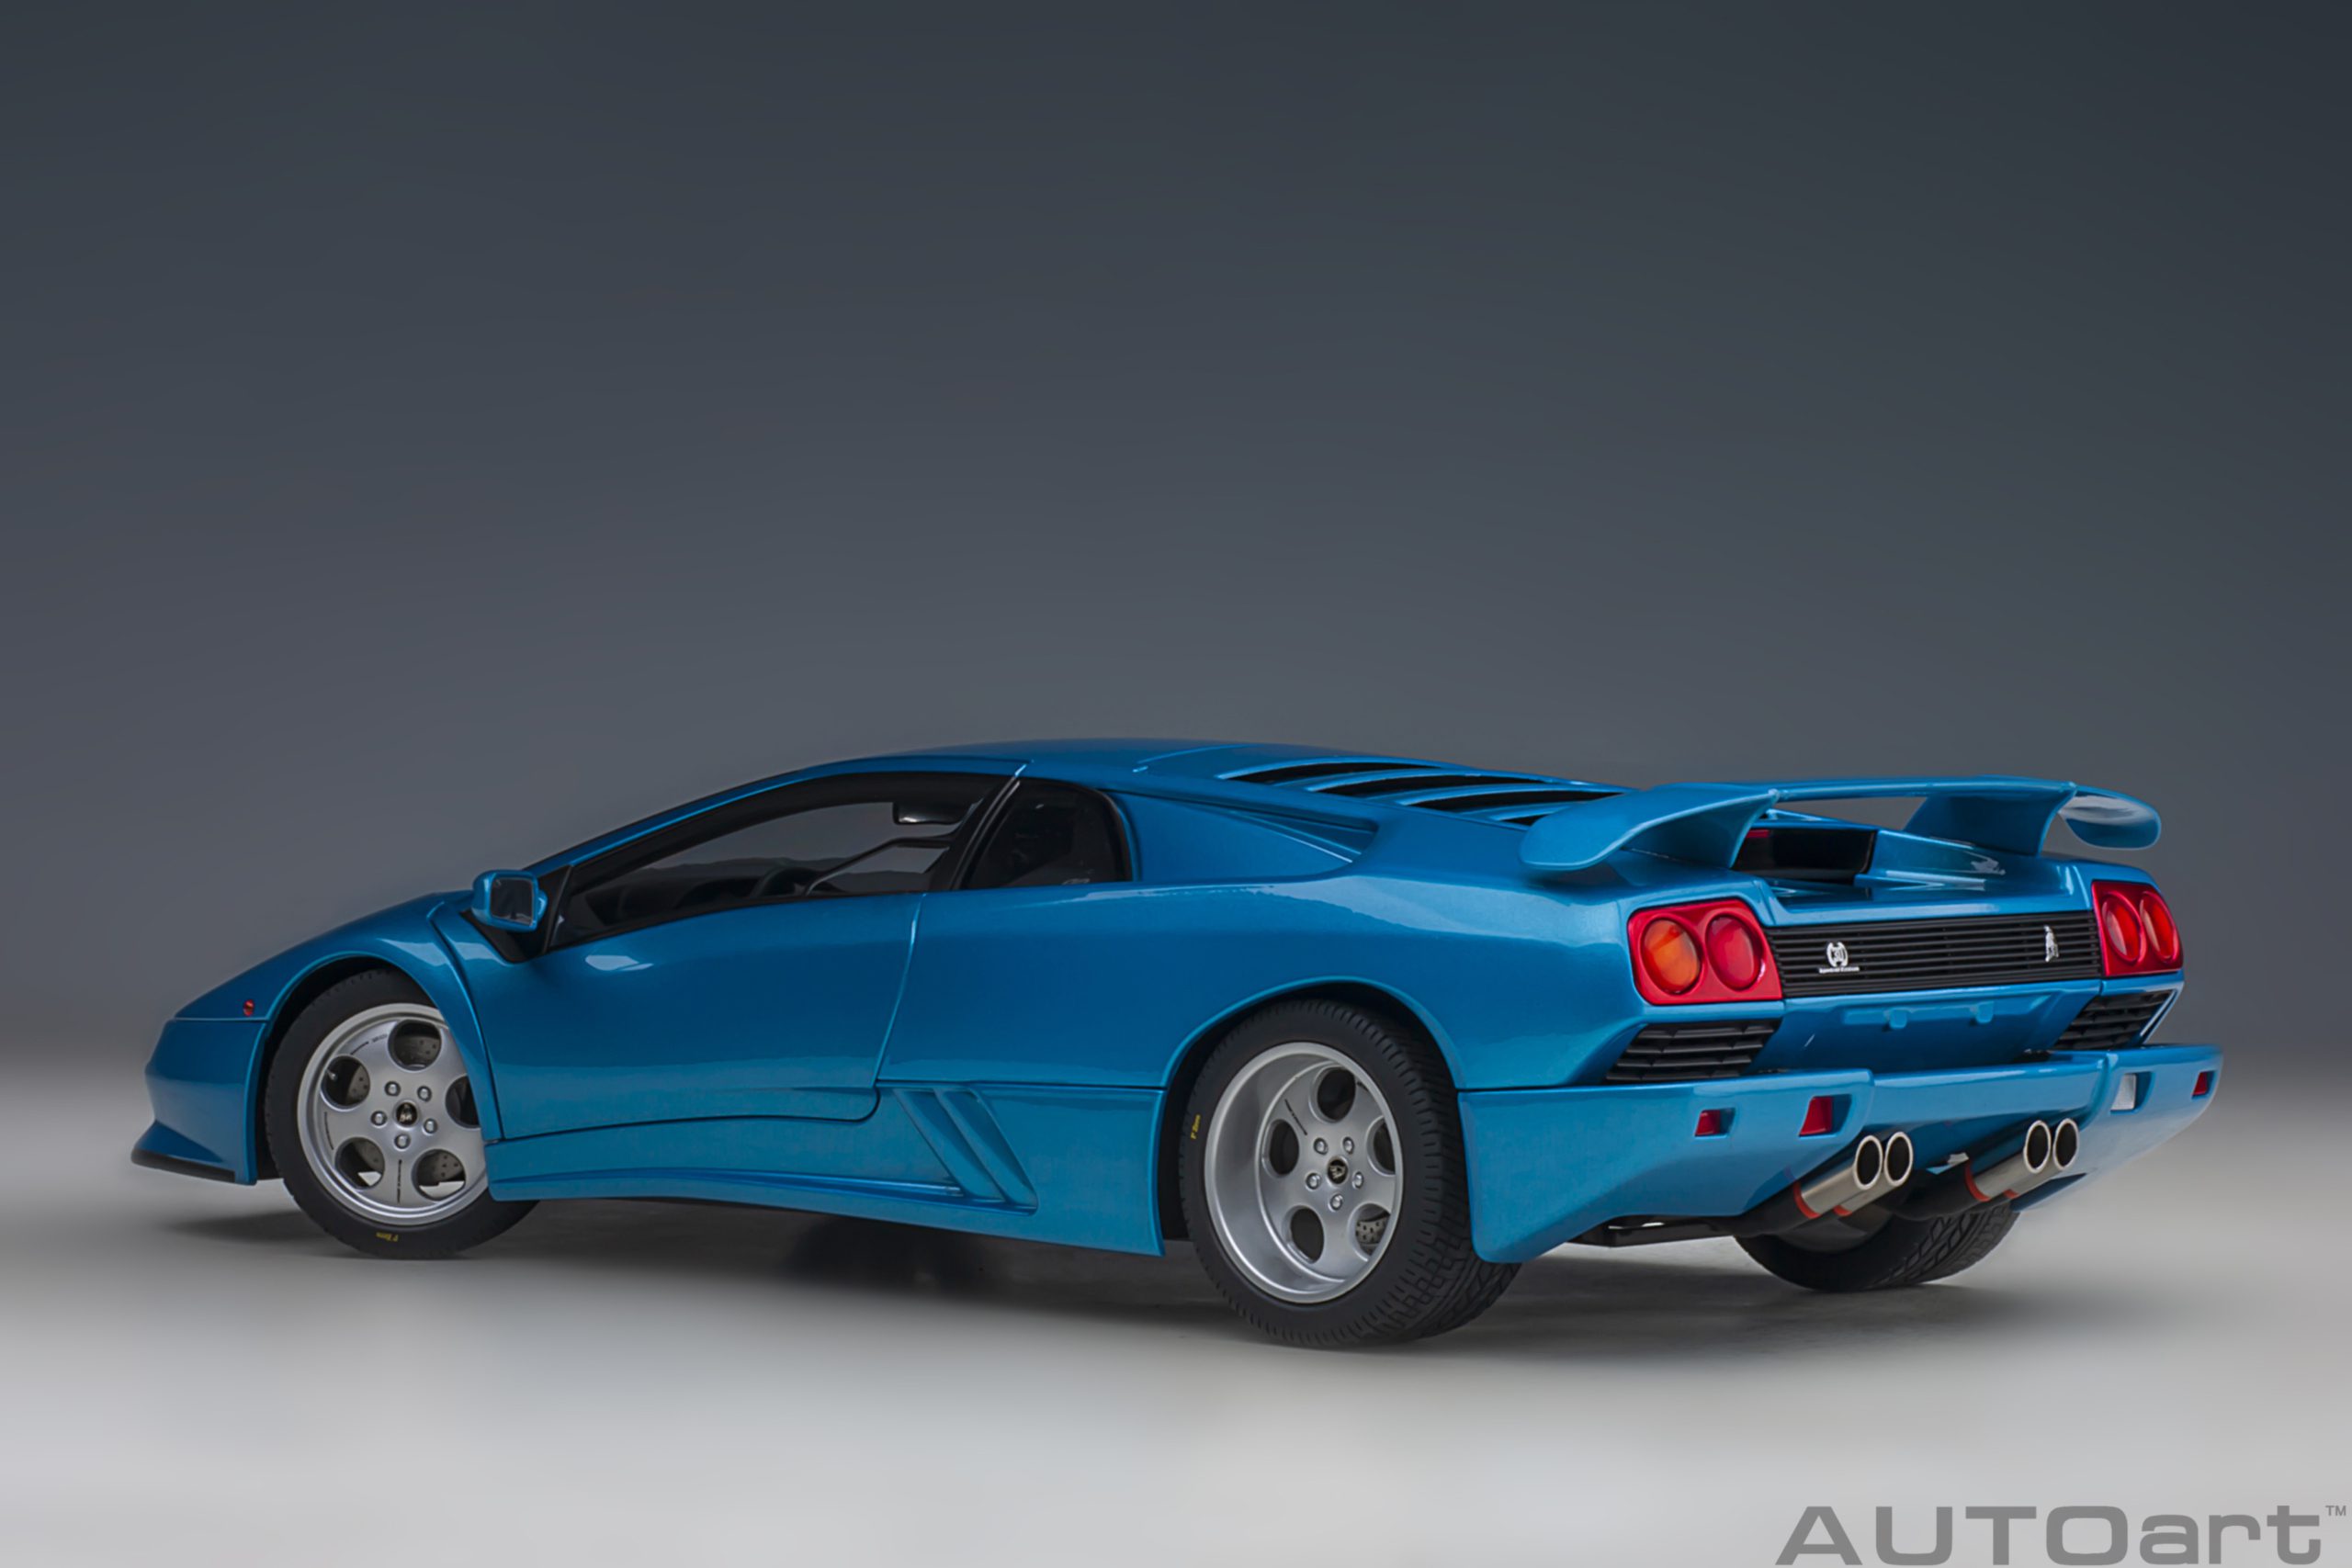 autoart-79156-2-Lamborghini-Diablo-SE30-30th-Anniversary-Edition-Blu-Sirena-metallic-blue